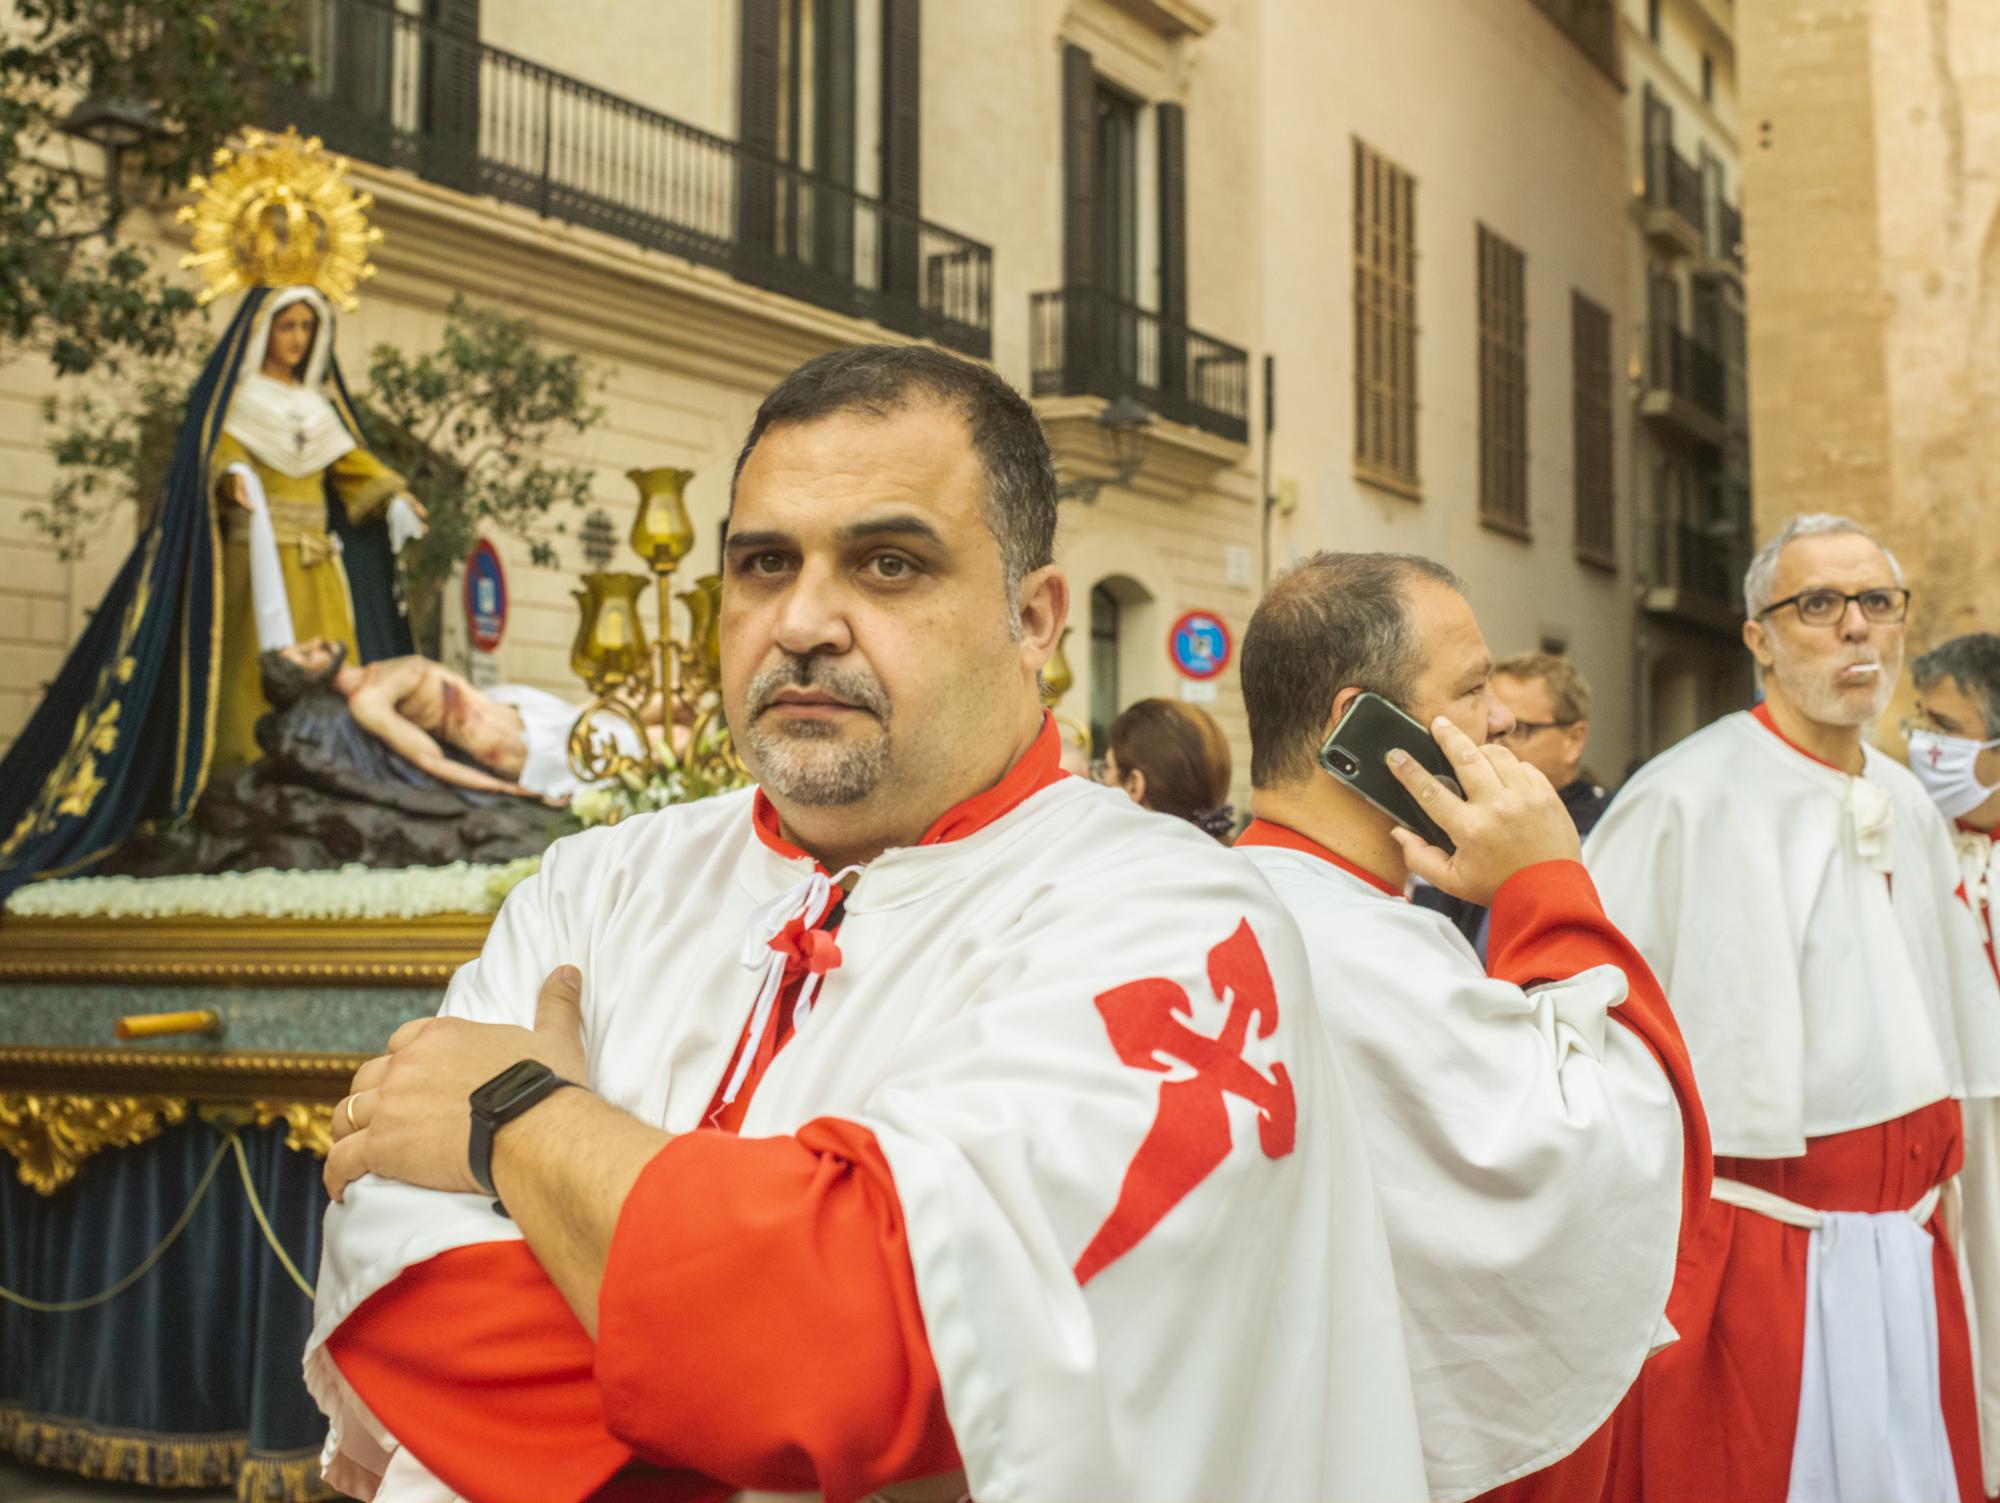 Passion - Semana santa, Palma. Procesión del santo entierro, Viernes Santo  